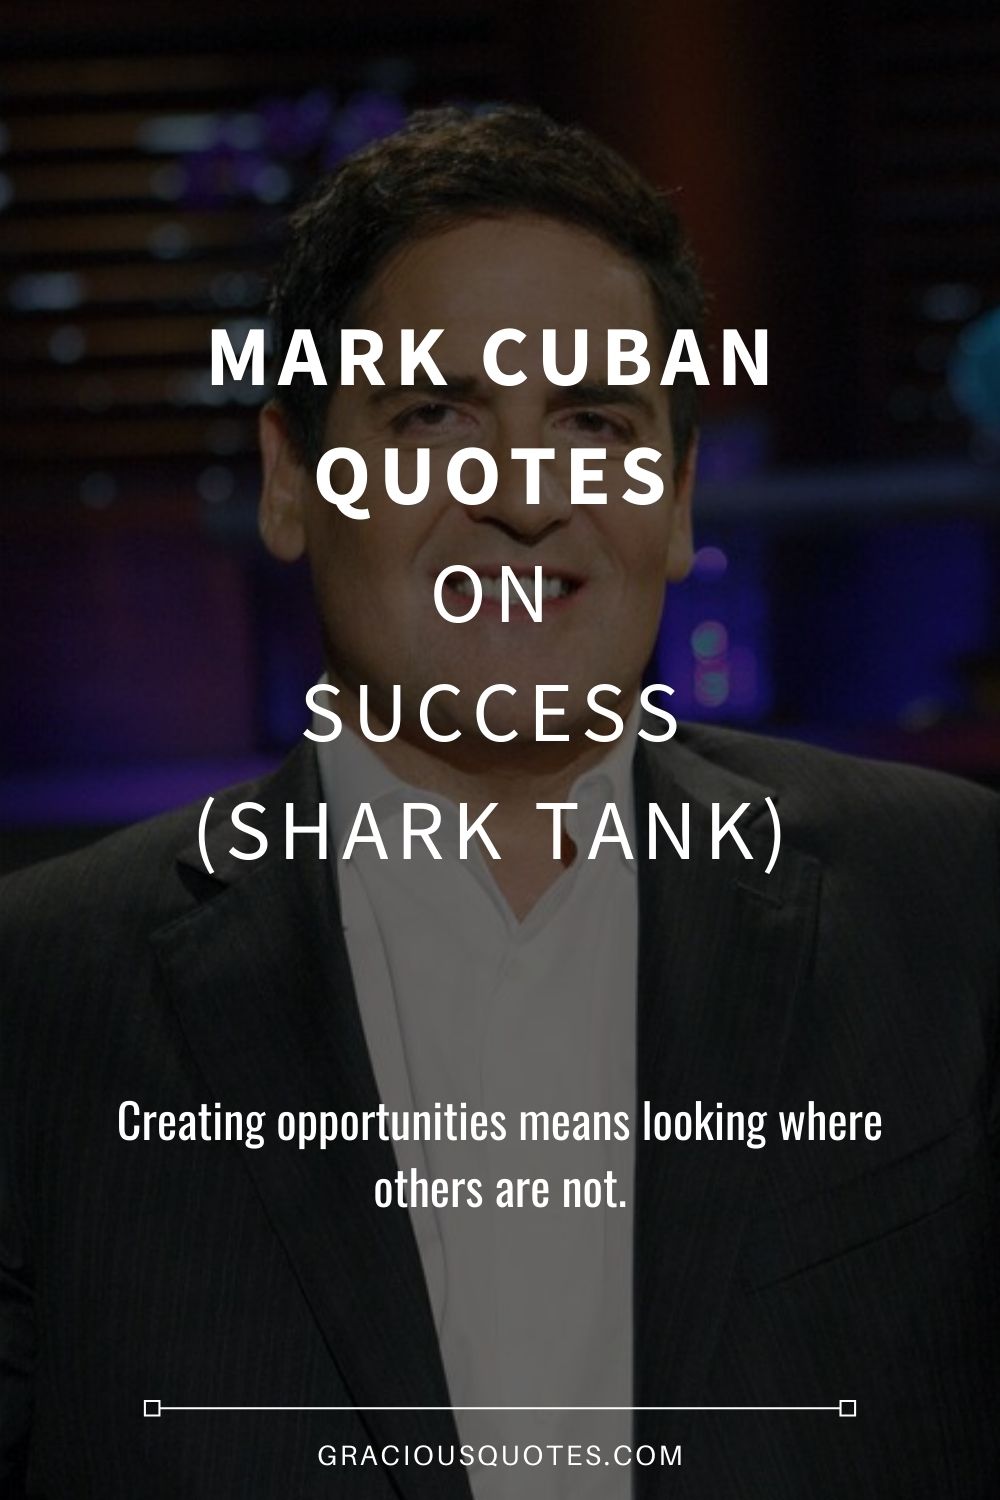 Mark Cuban Quotes on Success (SHARK TANK) - Gracious Quotes